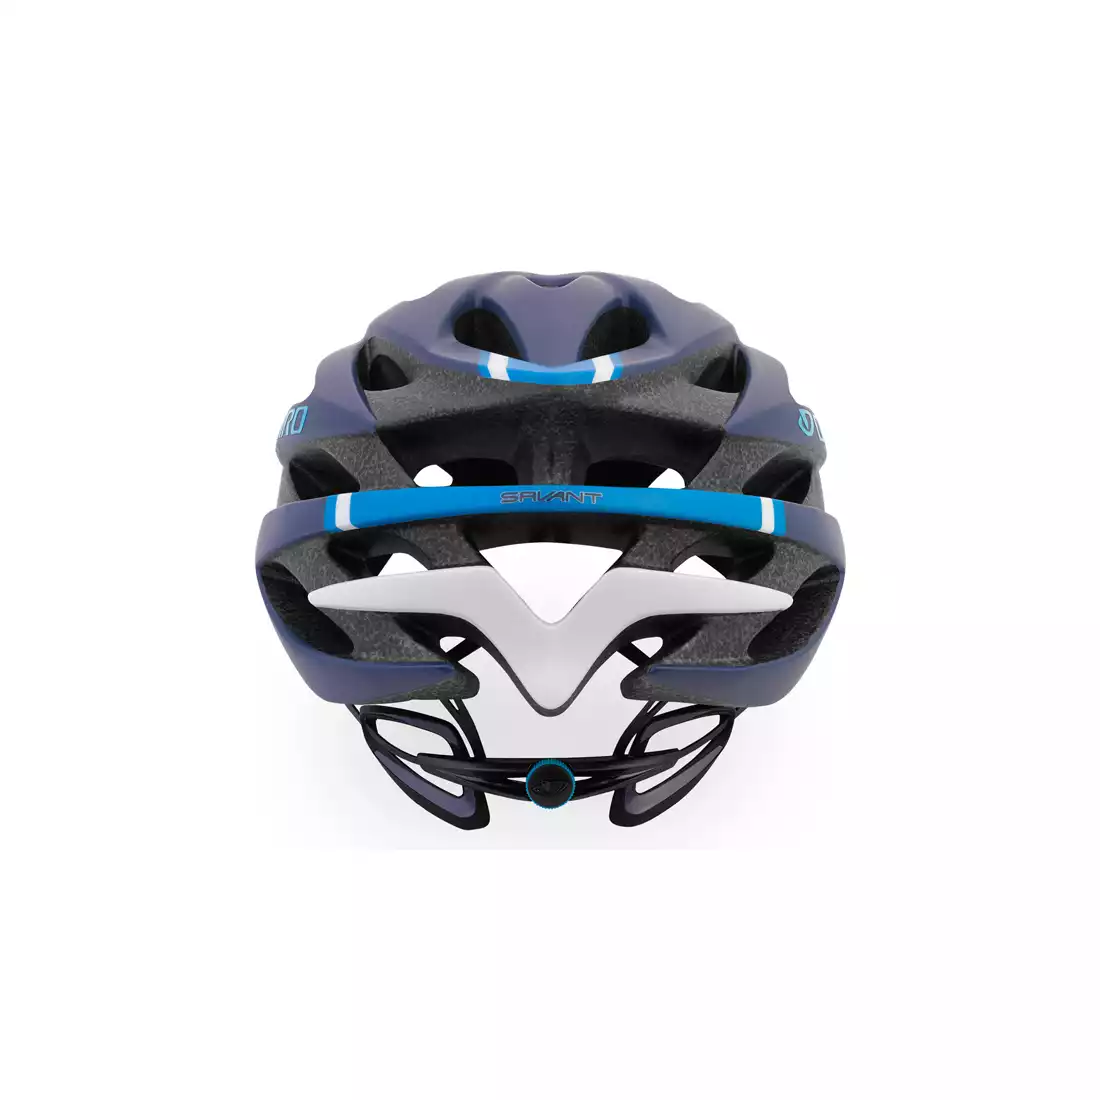 GIRO SAVANT MIPS - kask rowerowy niebieski